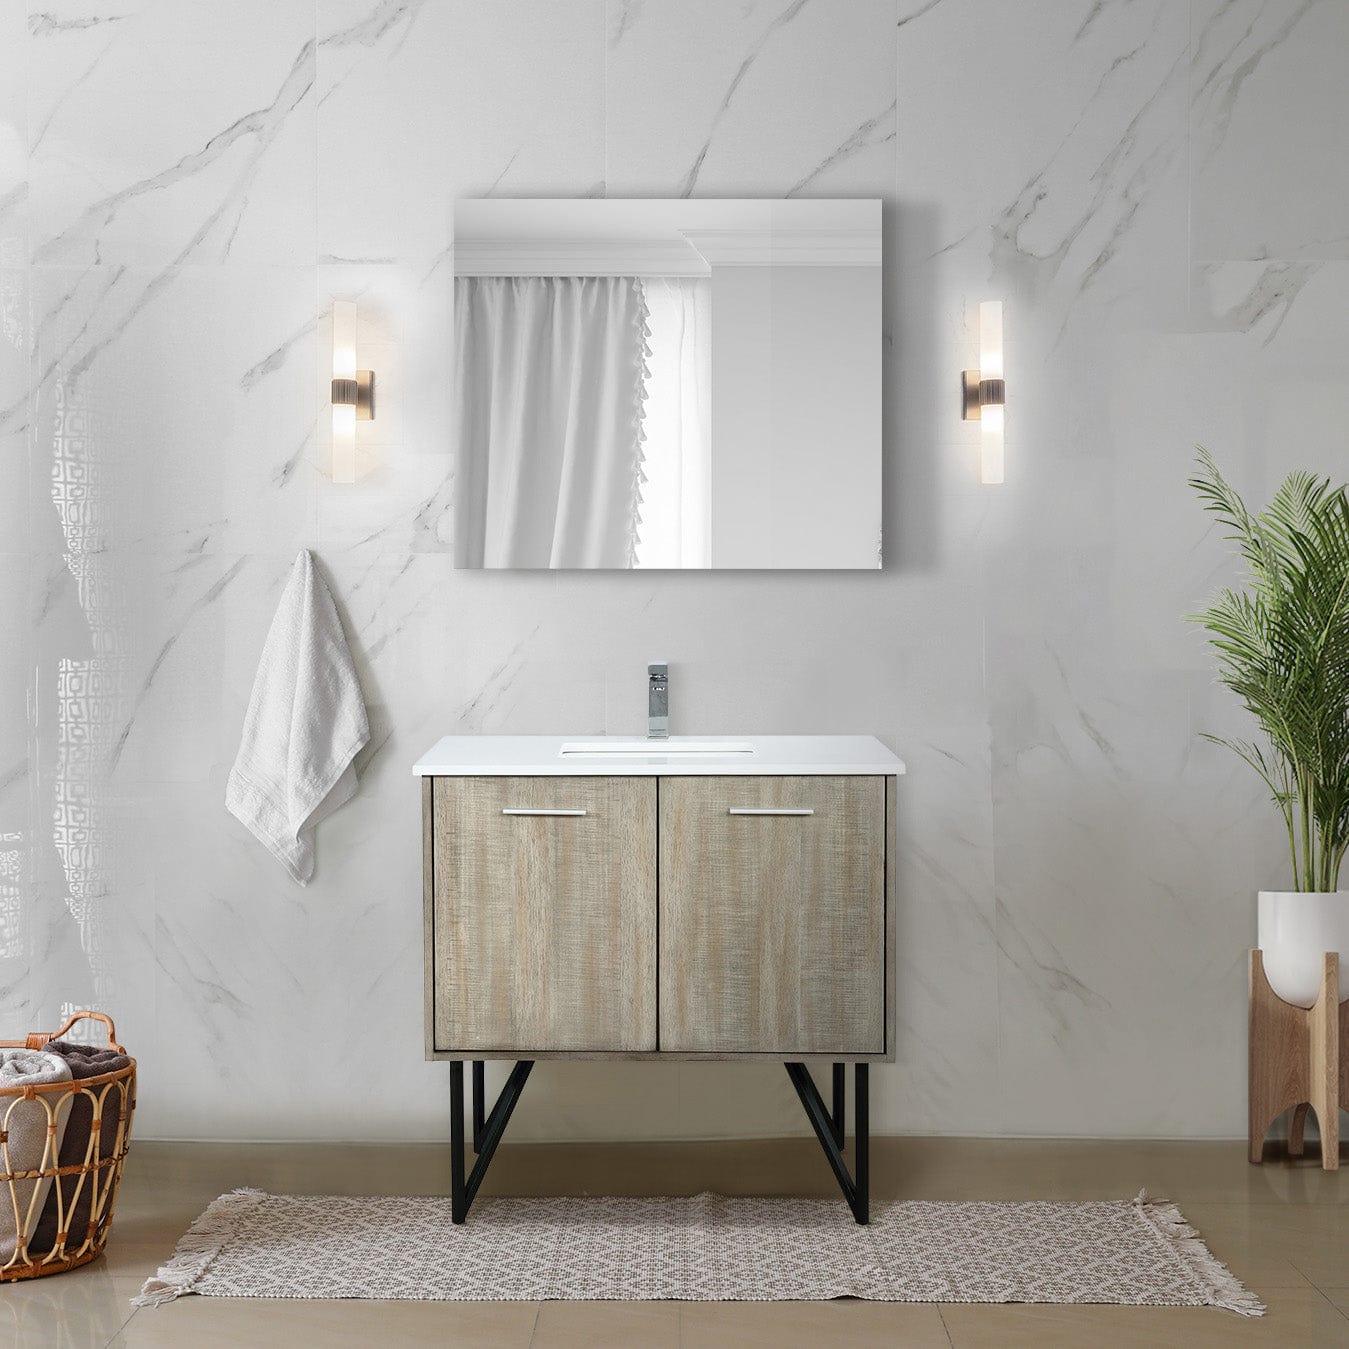 Lexora Bathroom Vanity Lancy  48" x 20" Rustic Acacia Bath Vanity, Cultured Marble Top, Brushed Nickel Faucet Set and 43" Mirror